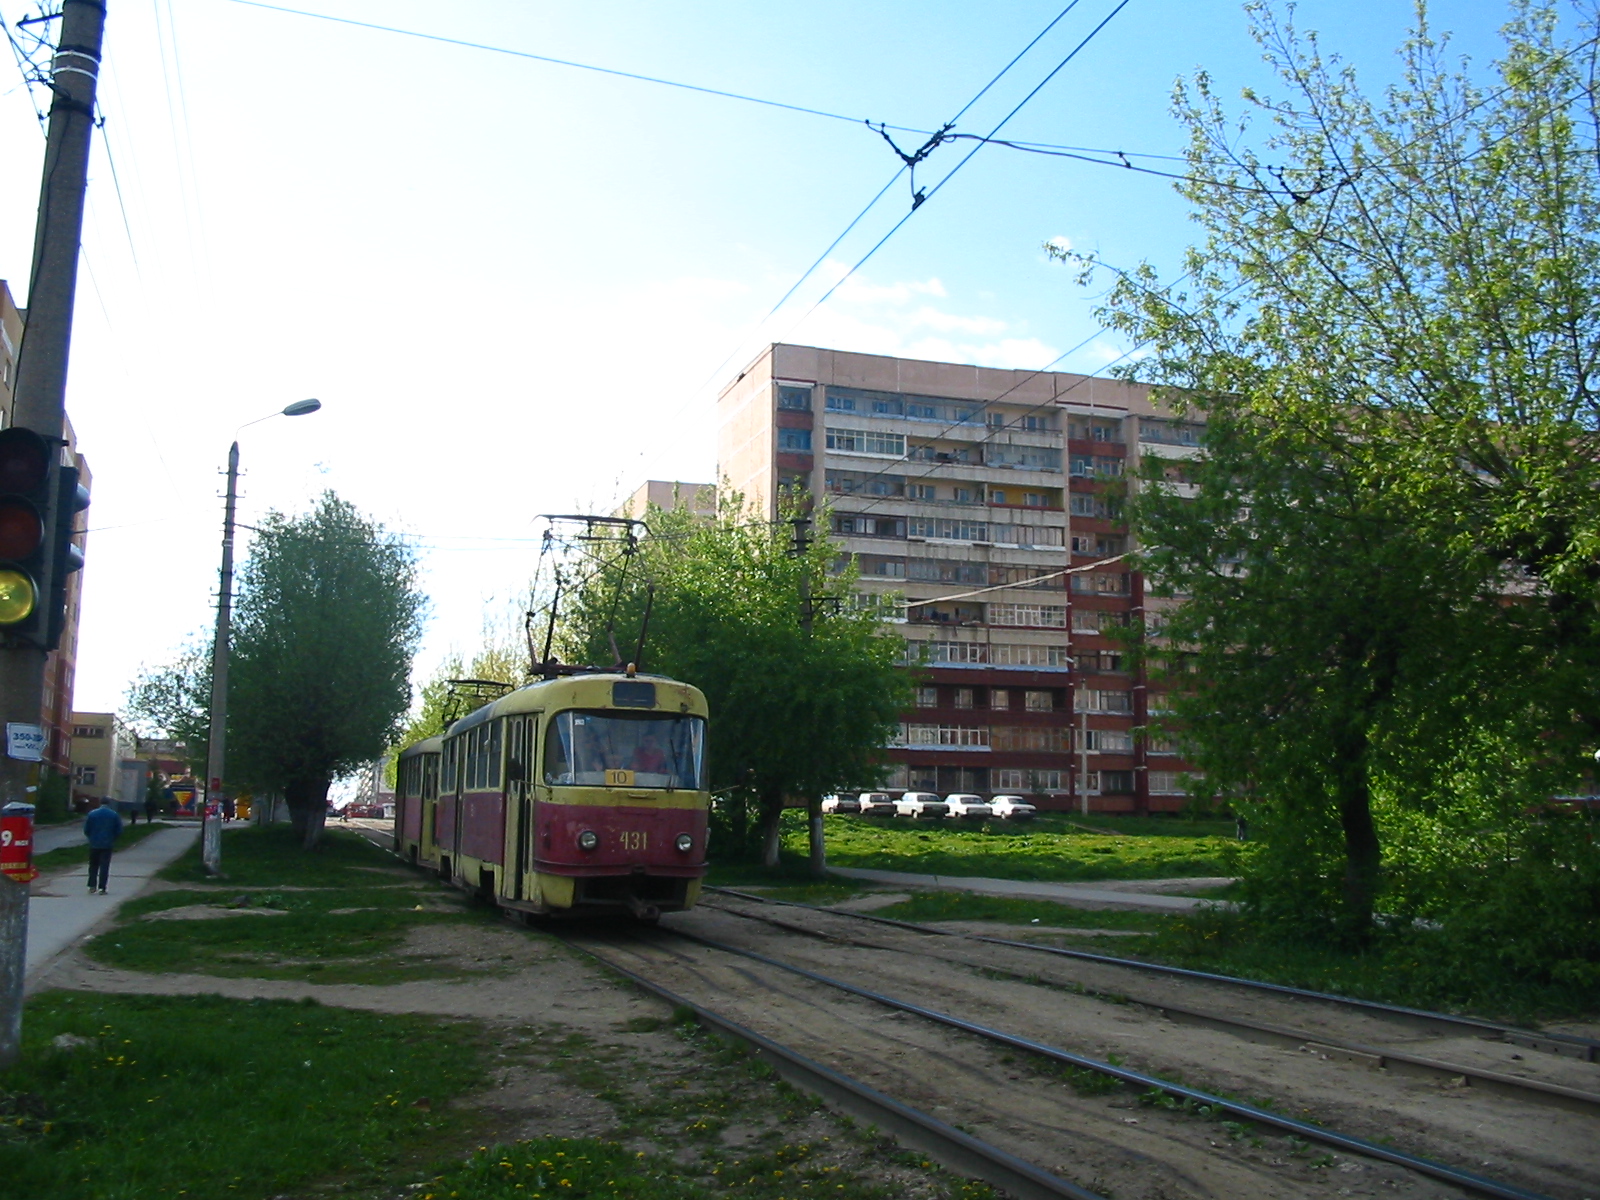 Трамвай Tatra T3 №431 на линиях второго депо